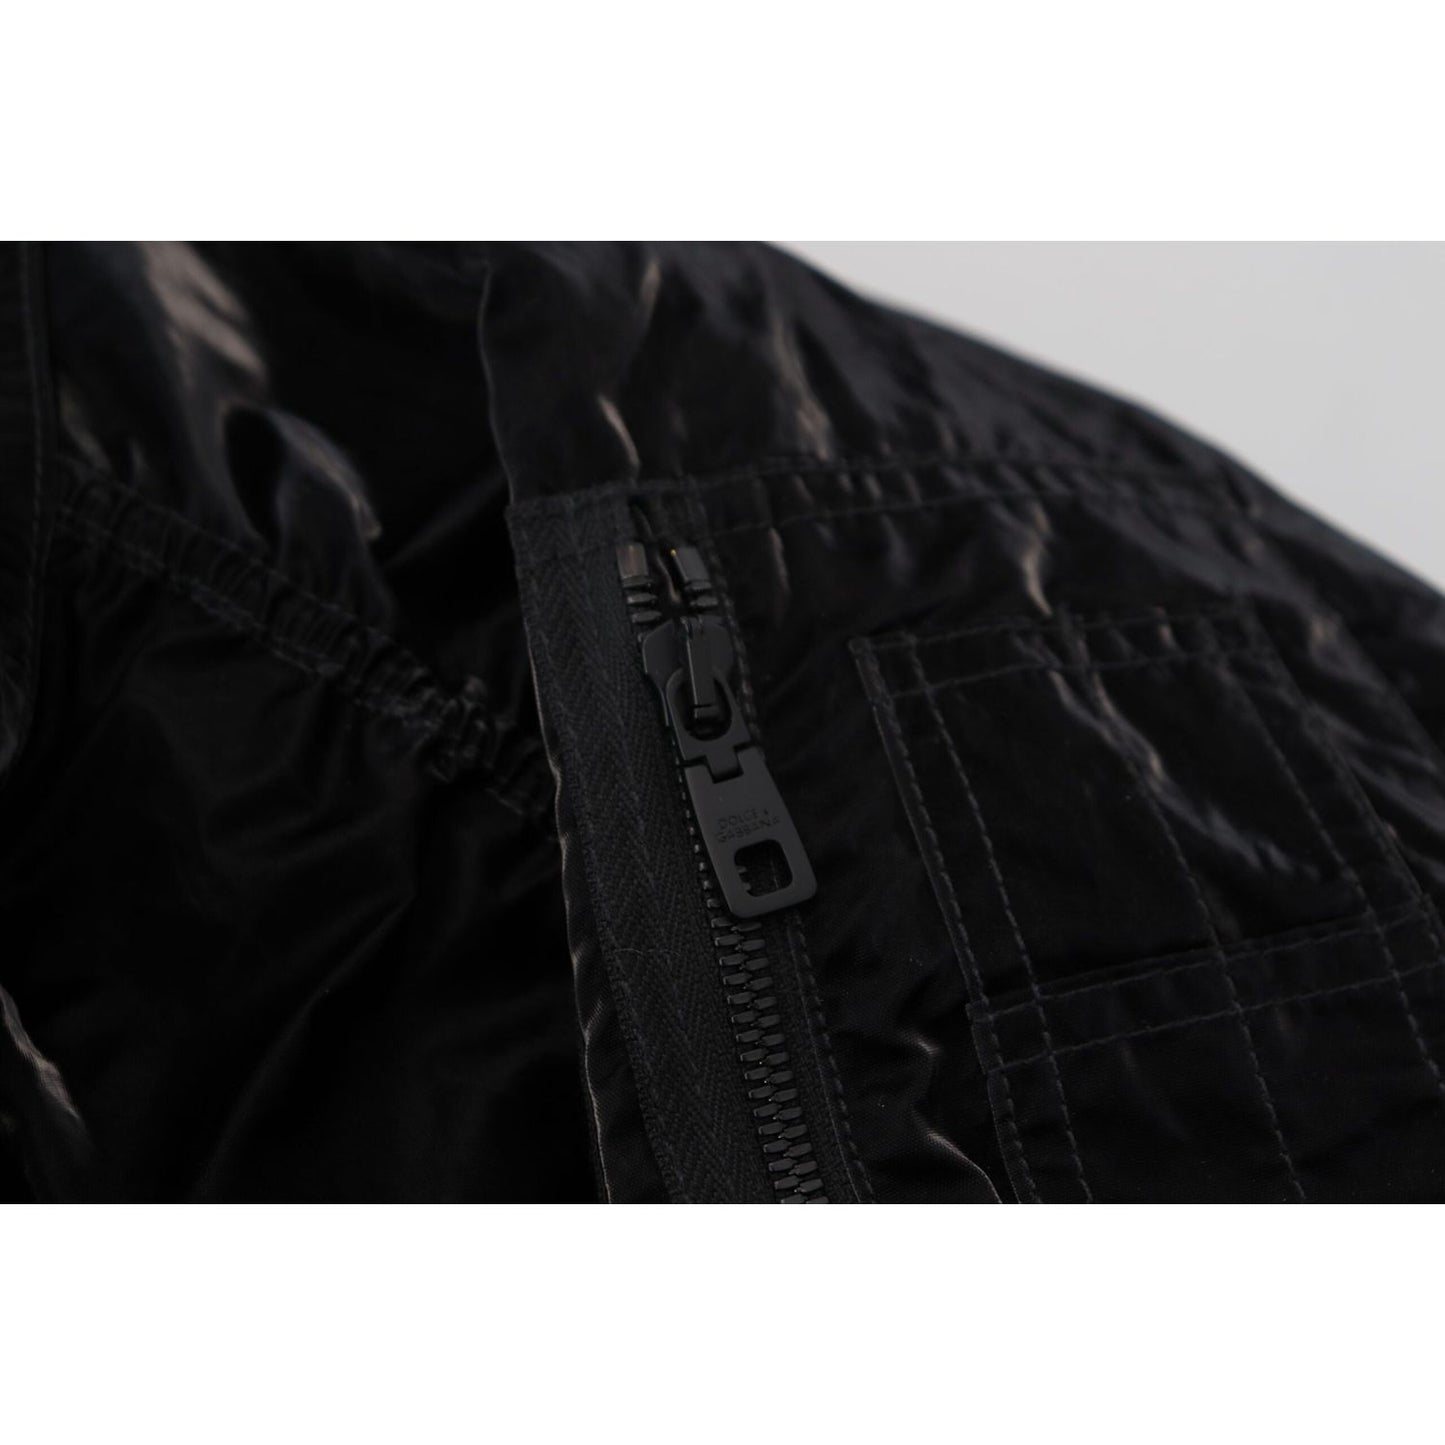 Dolce & Gabbana Elegant Black Bomber Hooded Jacket black-nylon-hooded-full-zip-bomber-jacket